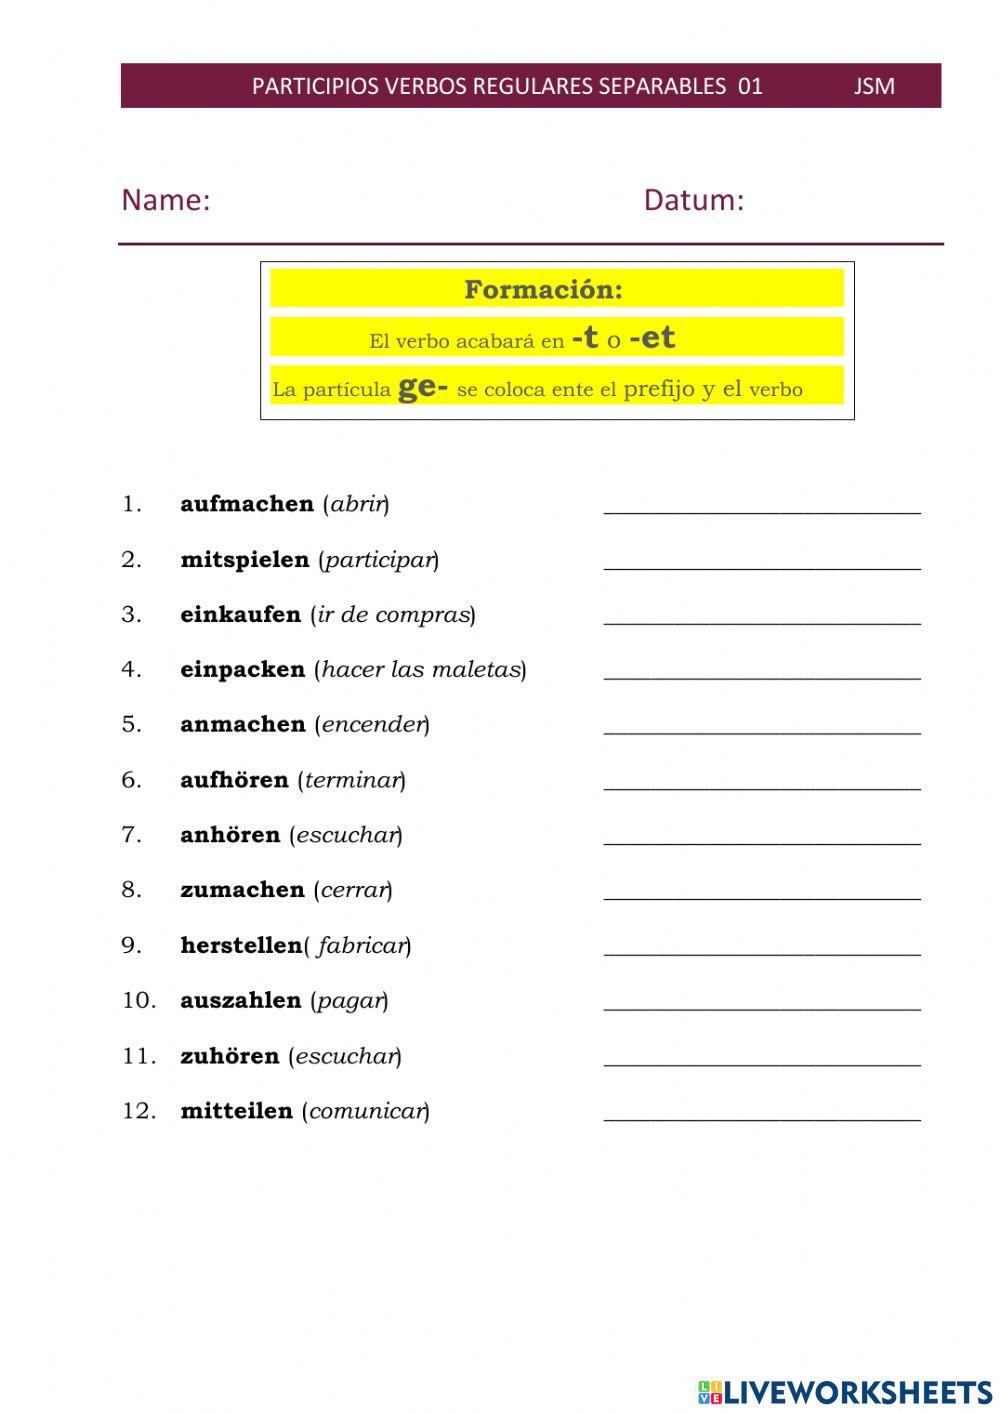 Participios verbos separables regulares 01